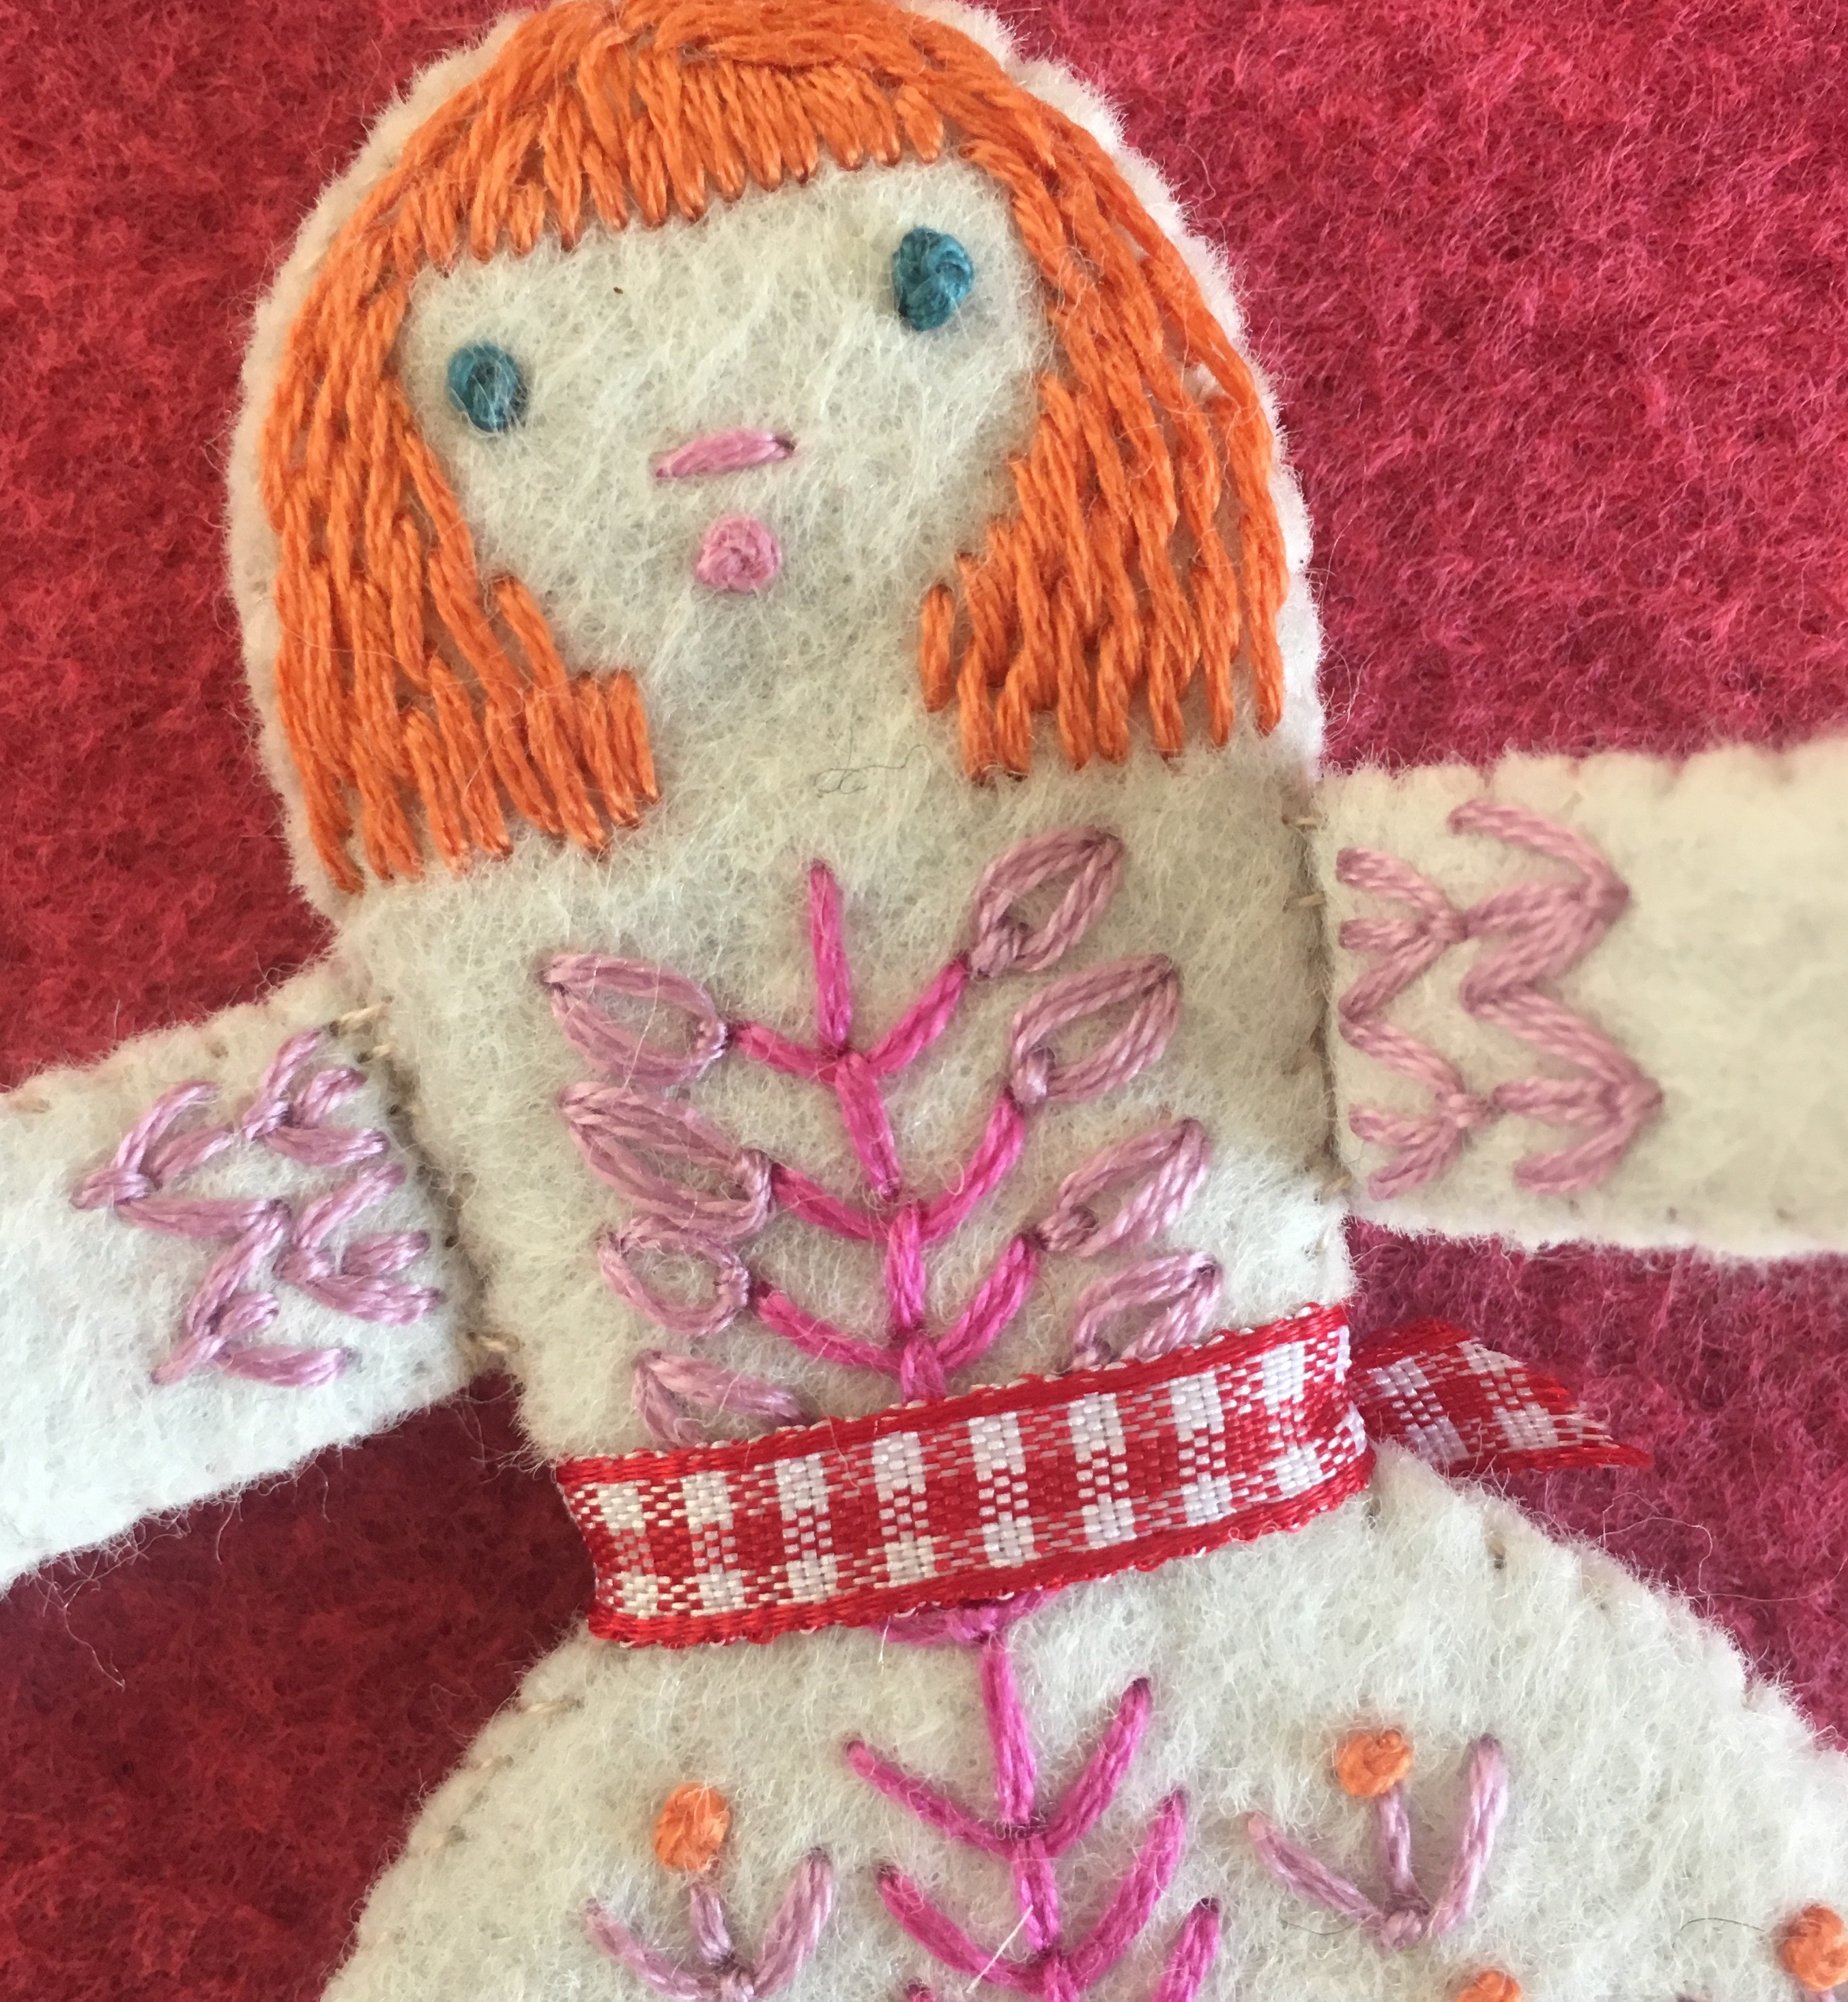 Three Folk Dolls embroidery kit detail